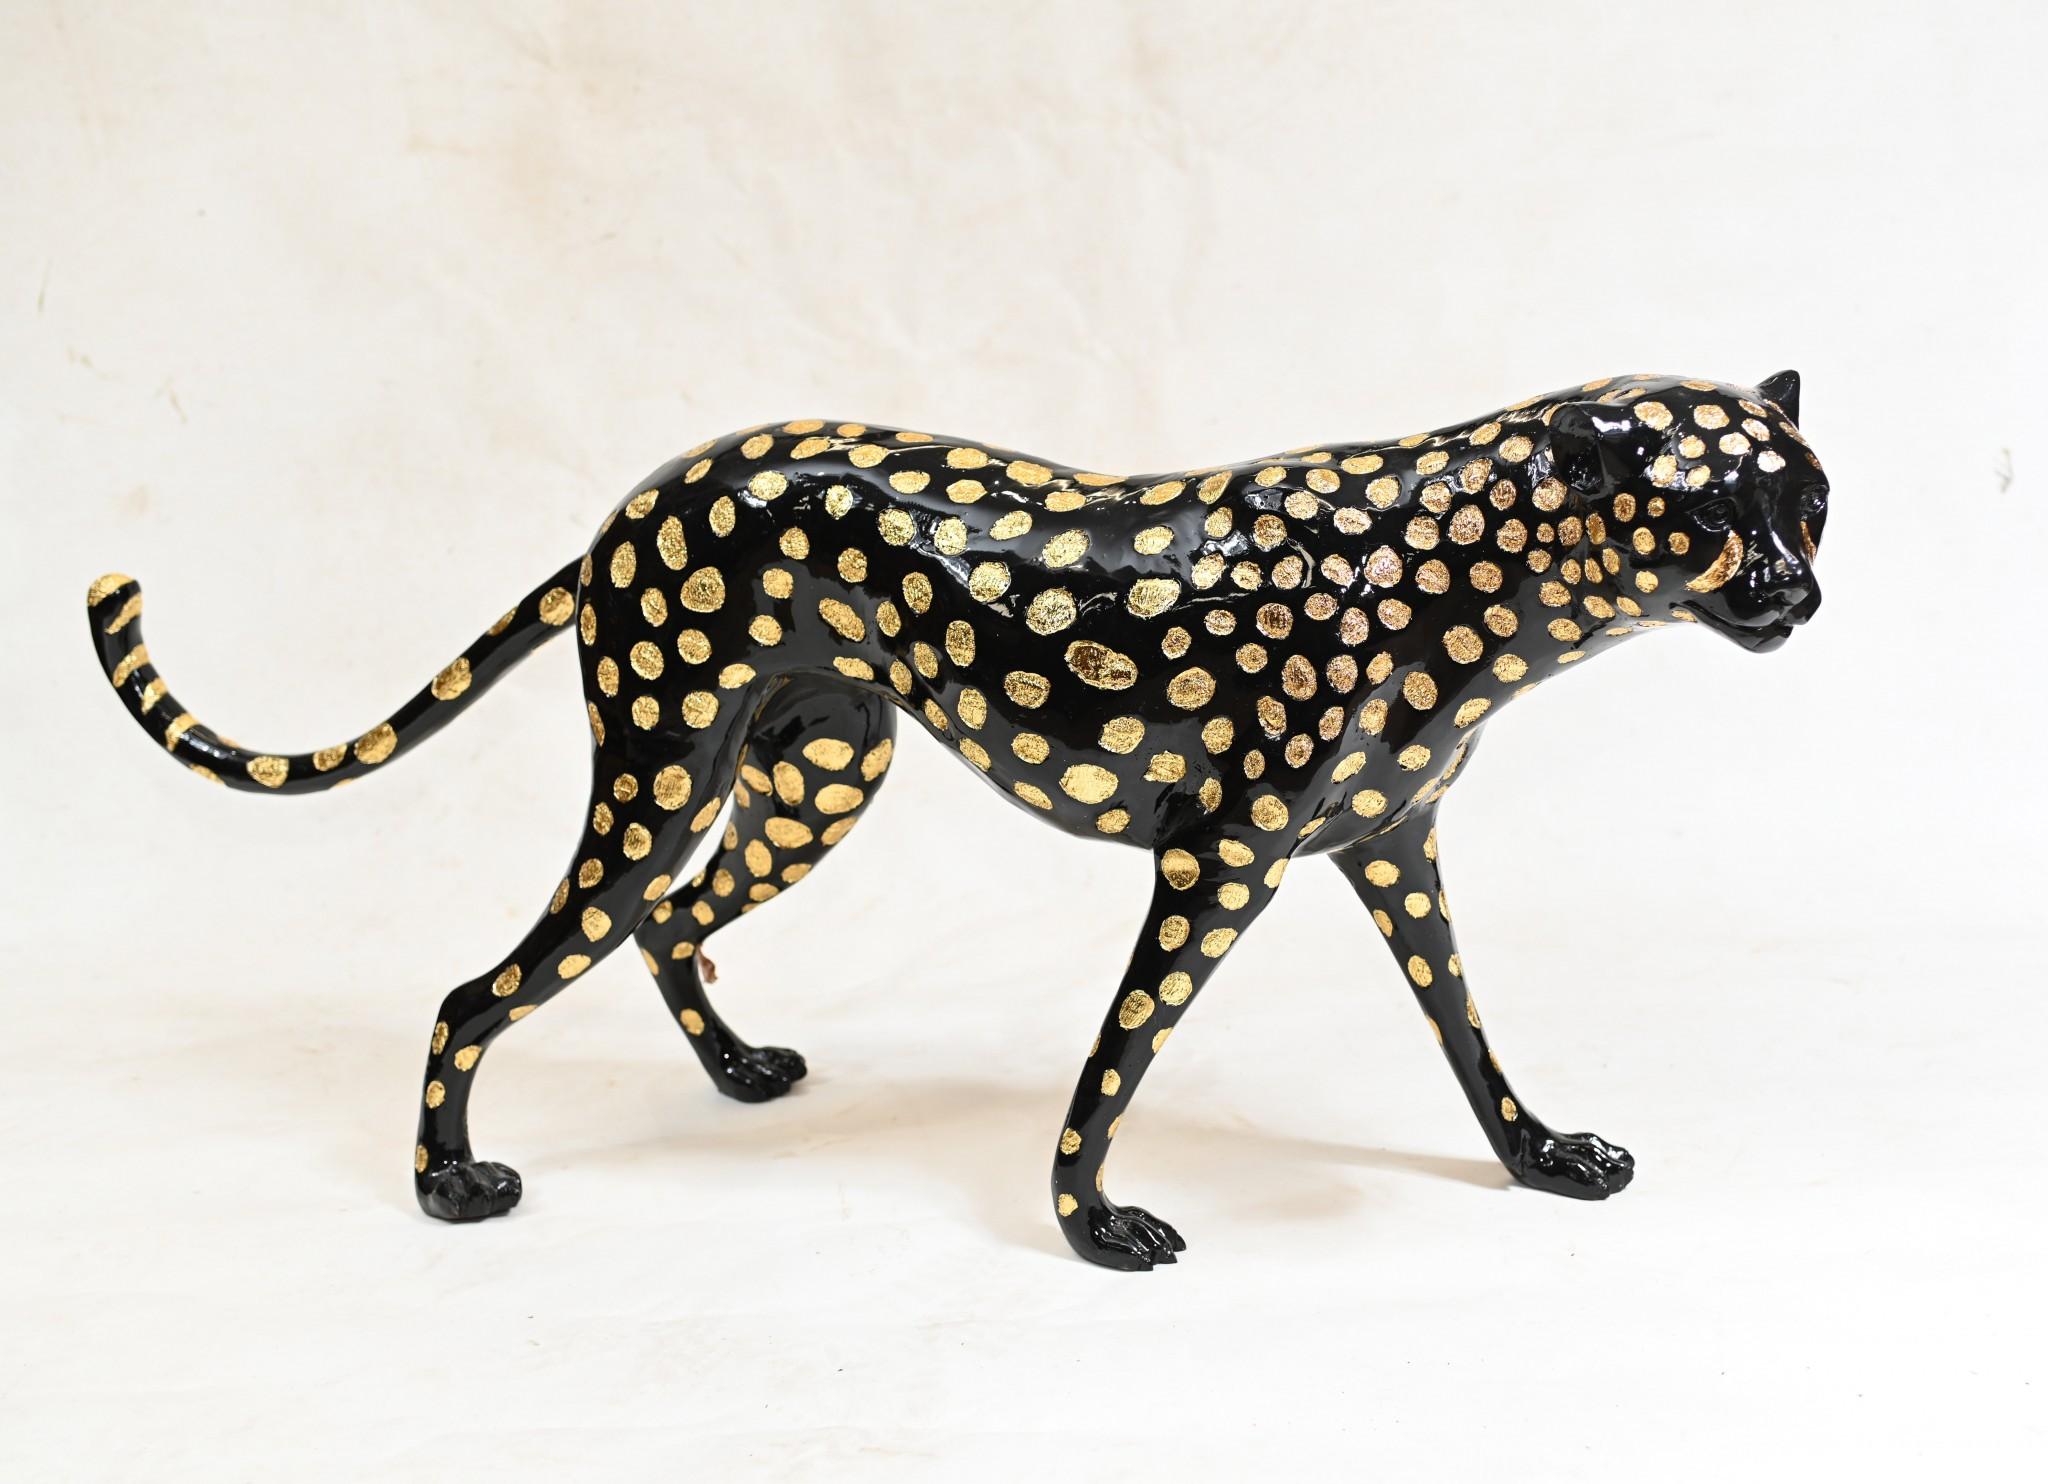 Magnifique moulage en bronze d'un grand léopard noir dans le style Art déco
Bonne taille avec près d'un mètre de long
Le casting est superbe, regardez comment les taches des créatures ont été rendues en noir.
L'artiste a vraiment capturé la